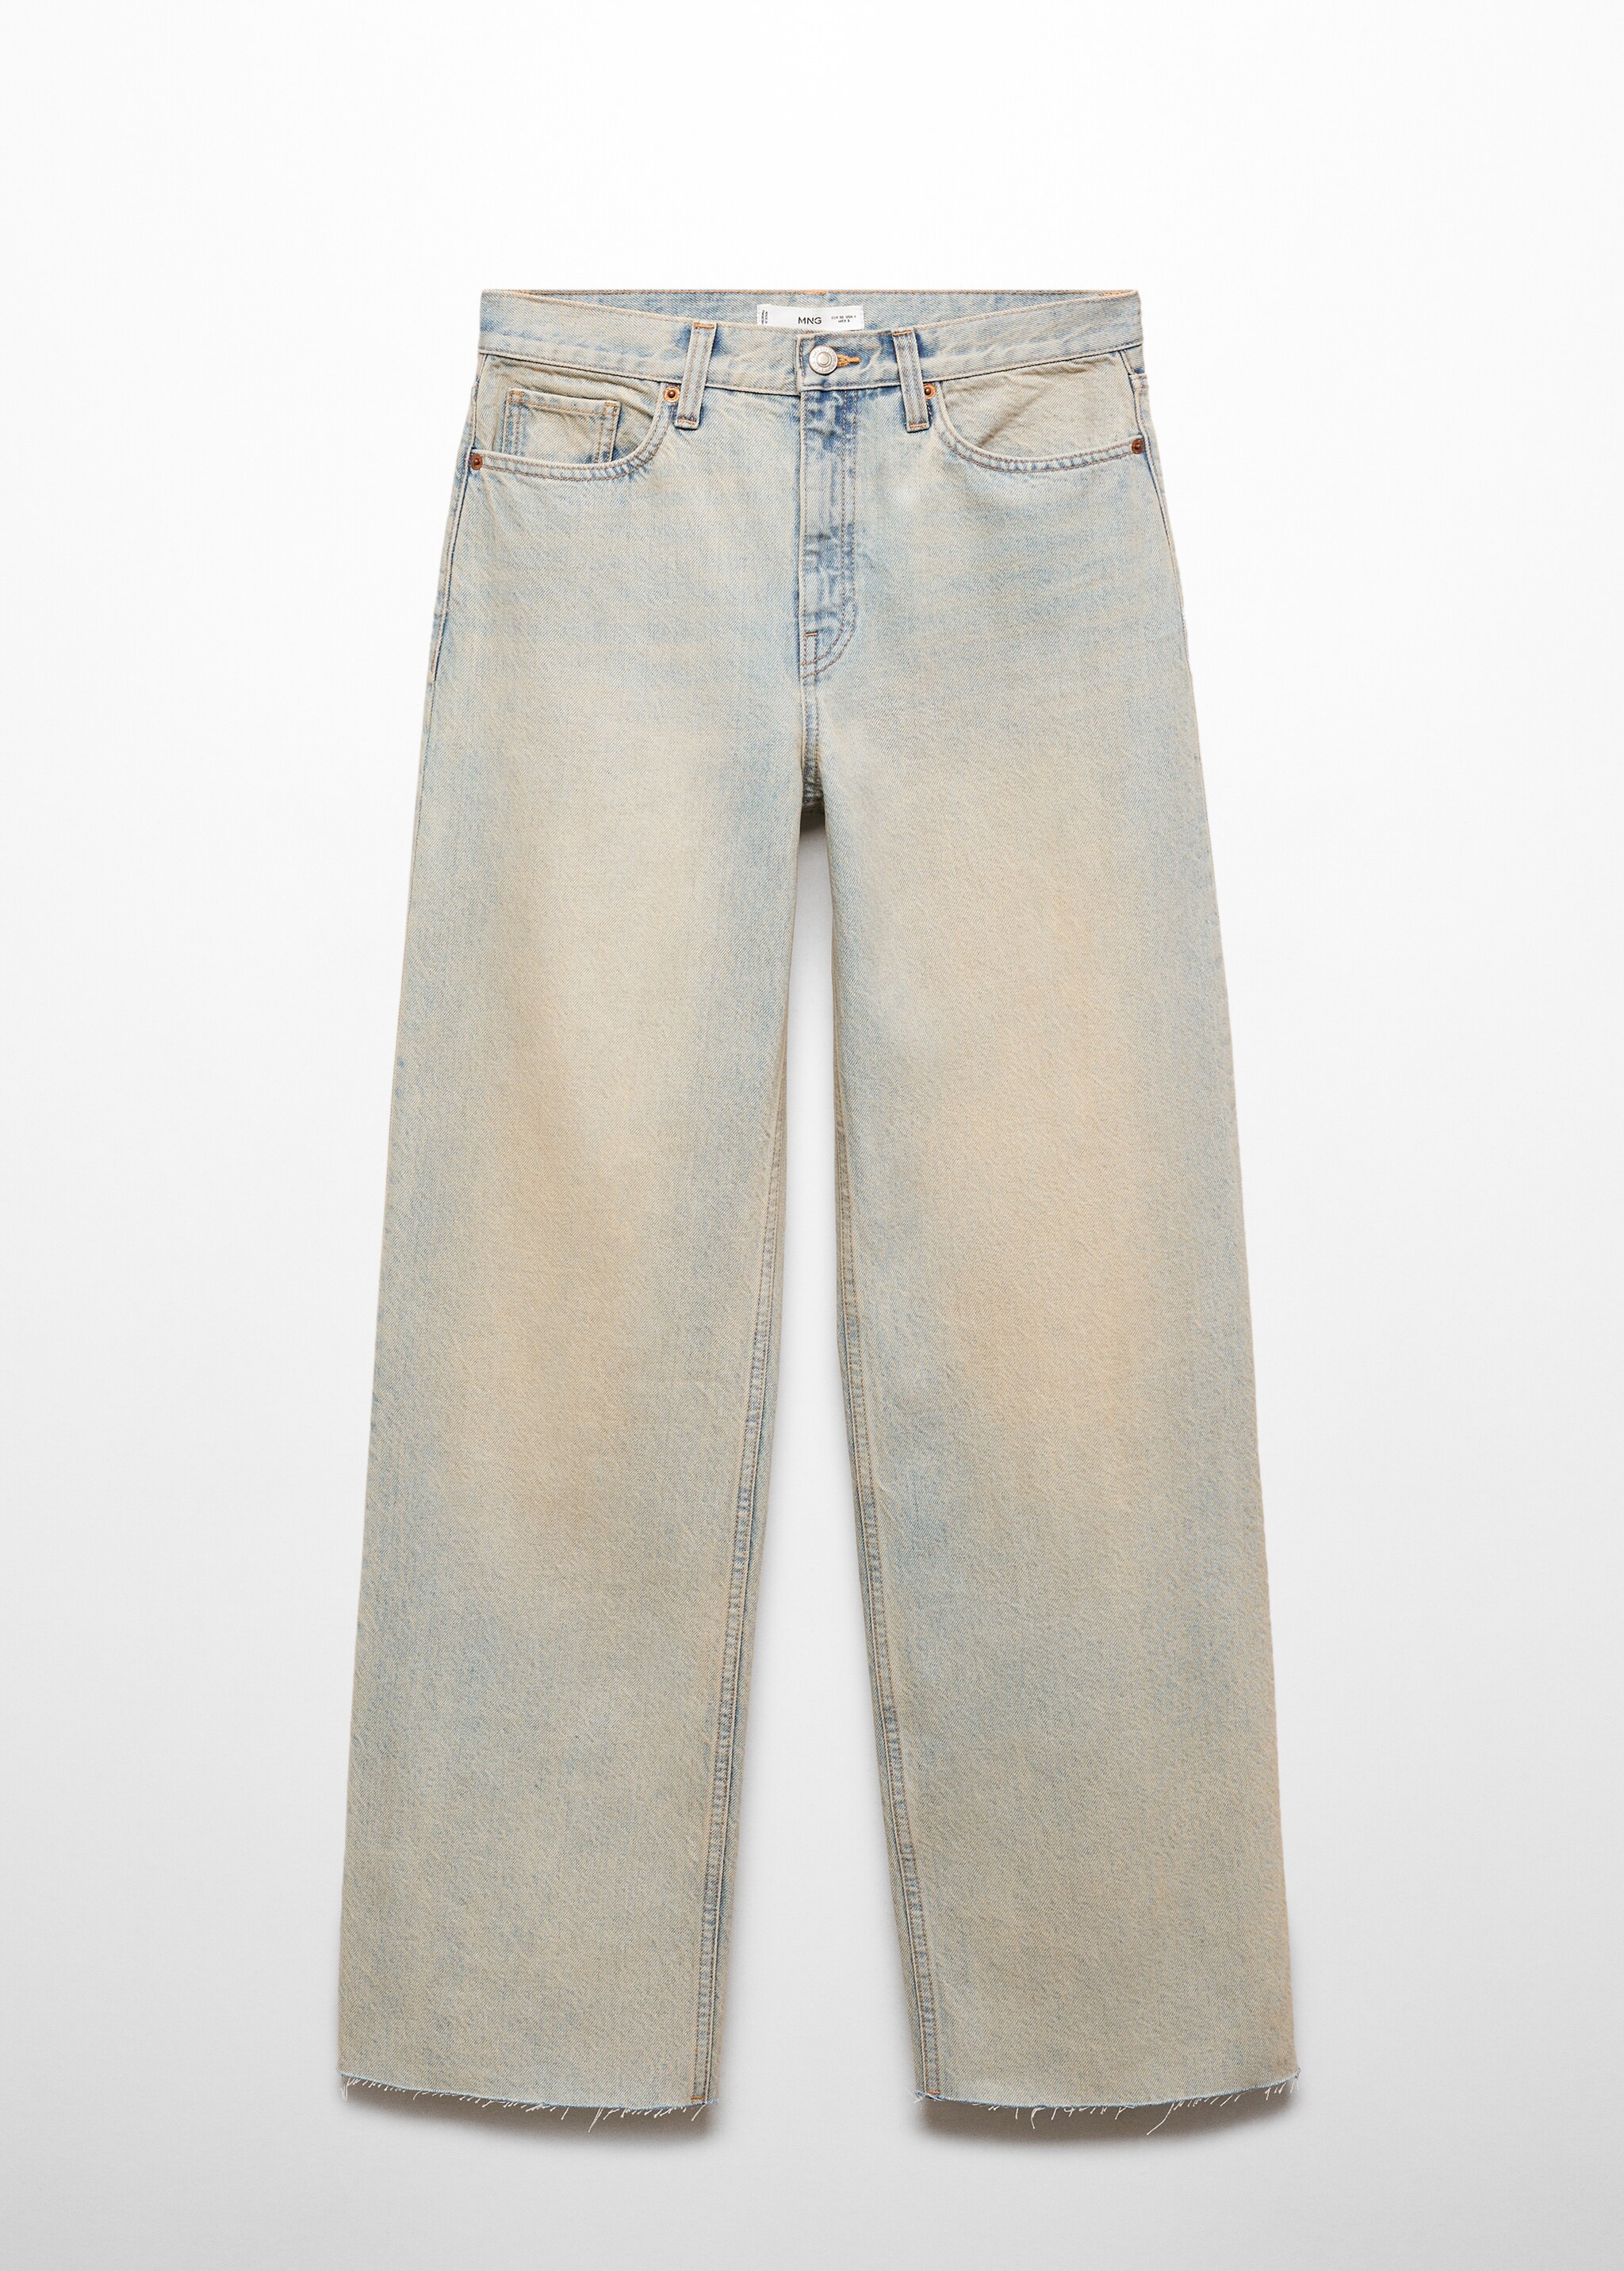 Jeans wideleg vita alta - Articolo senza modello